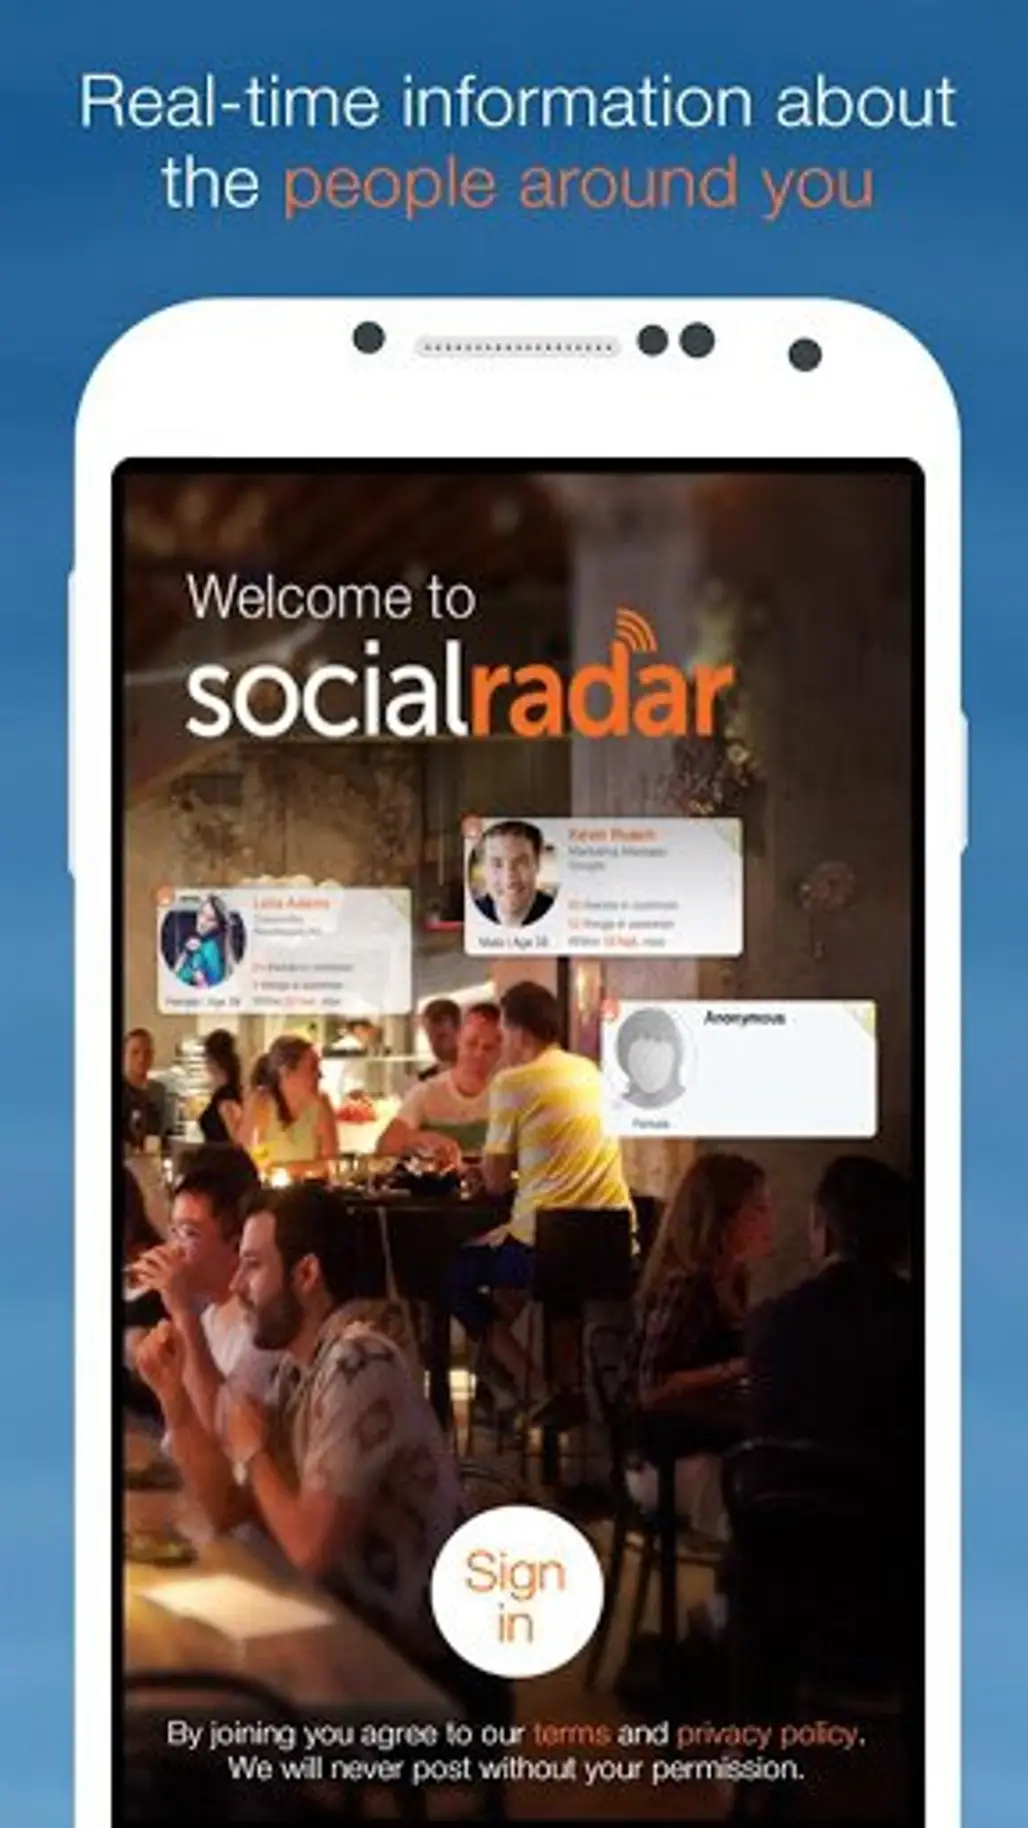 Social Radar